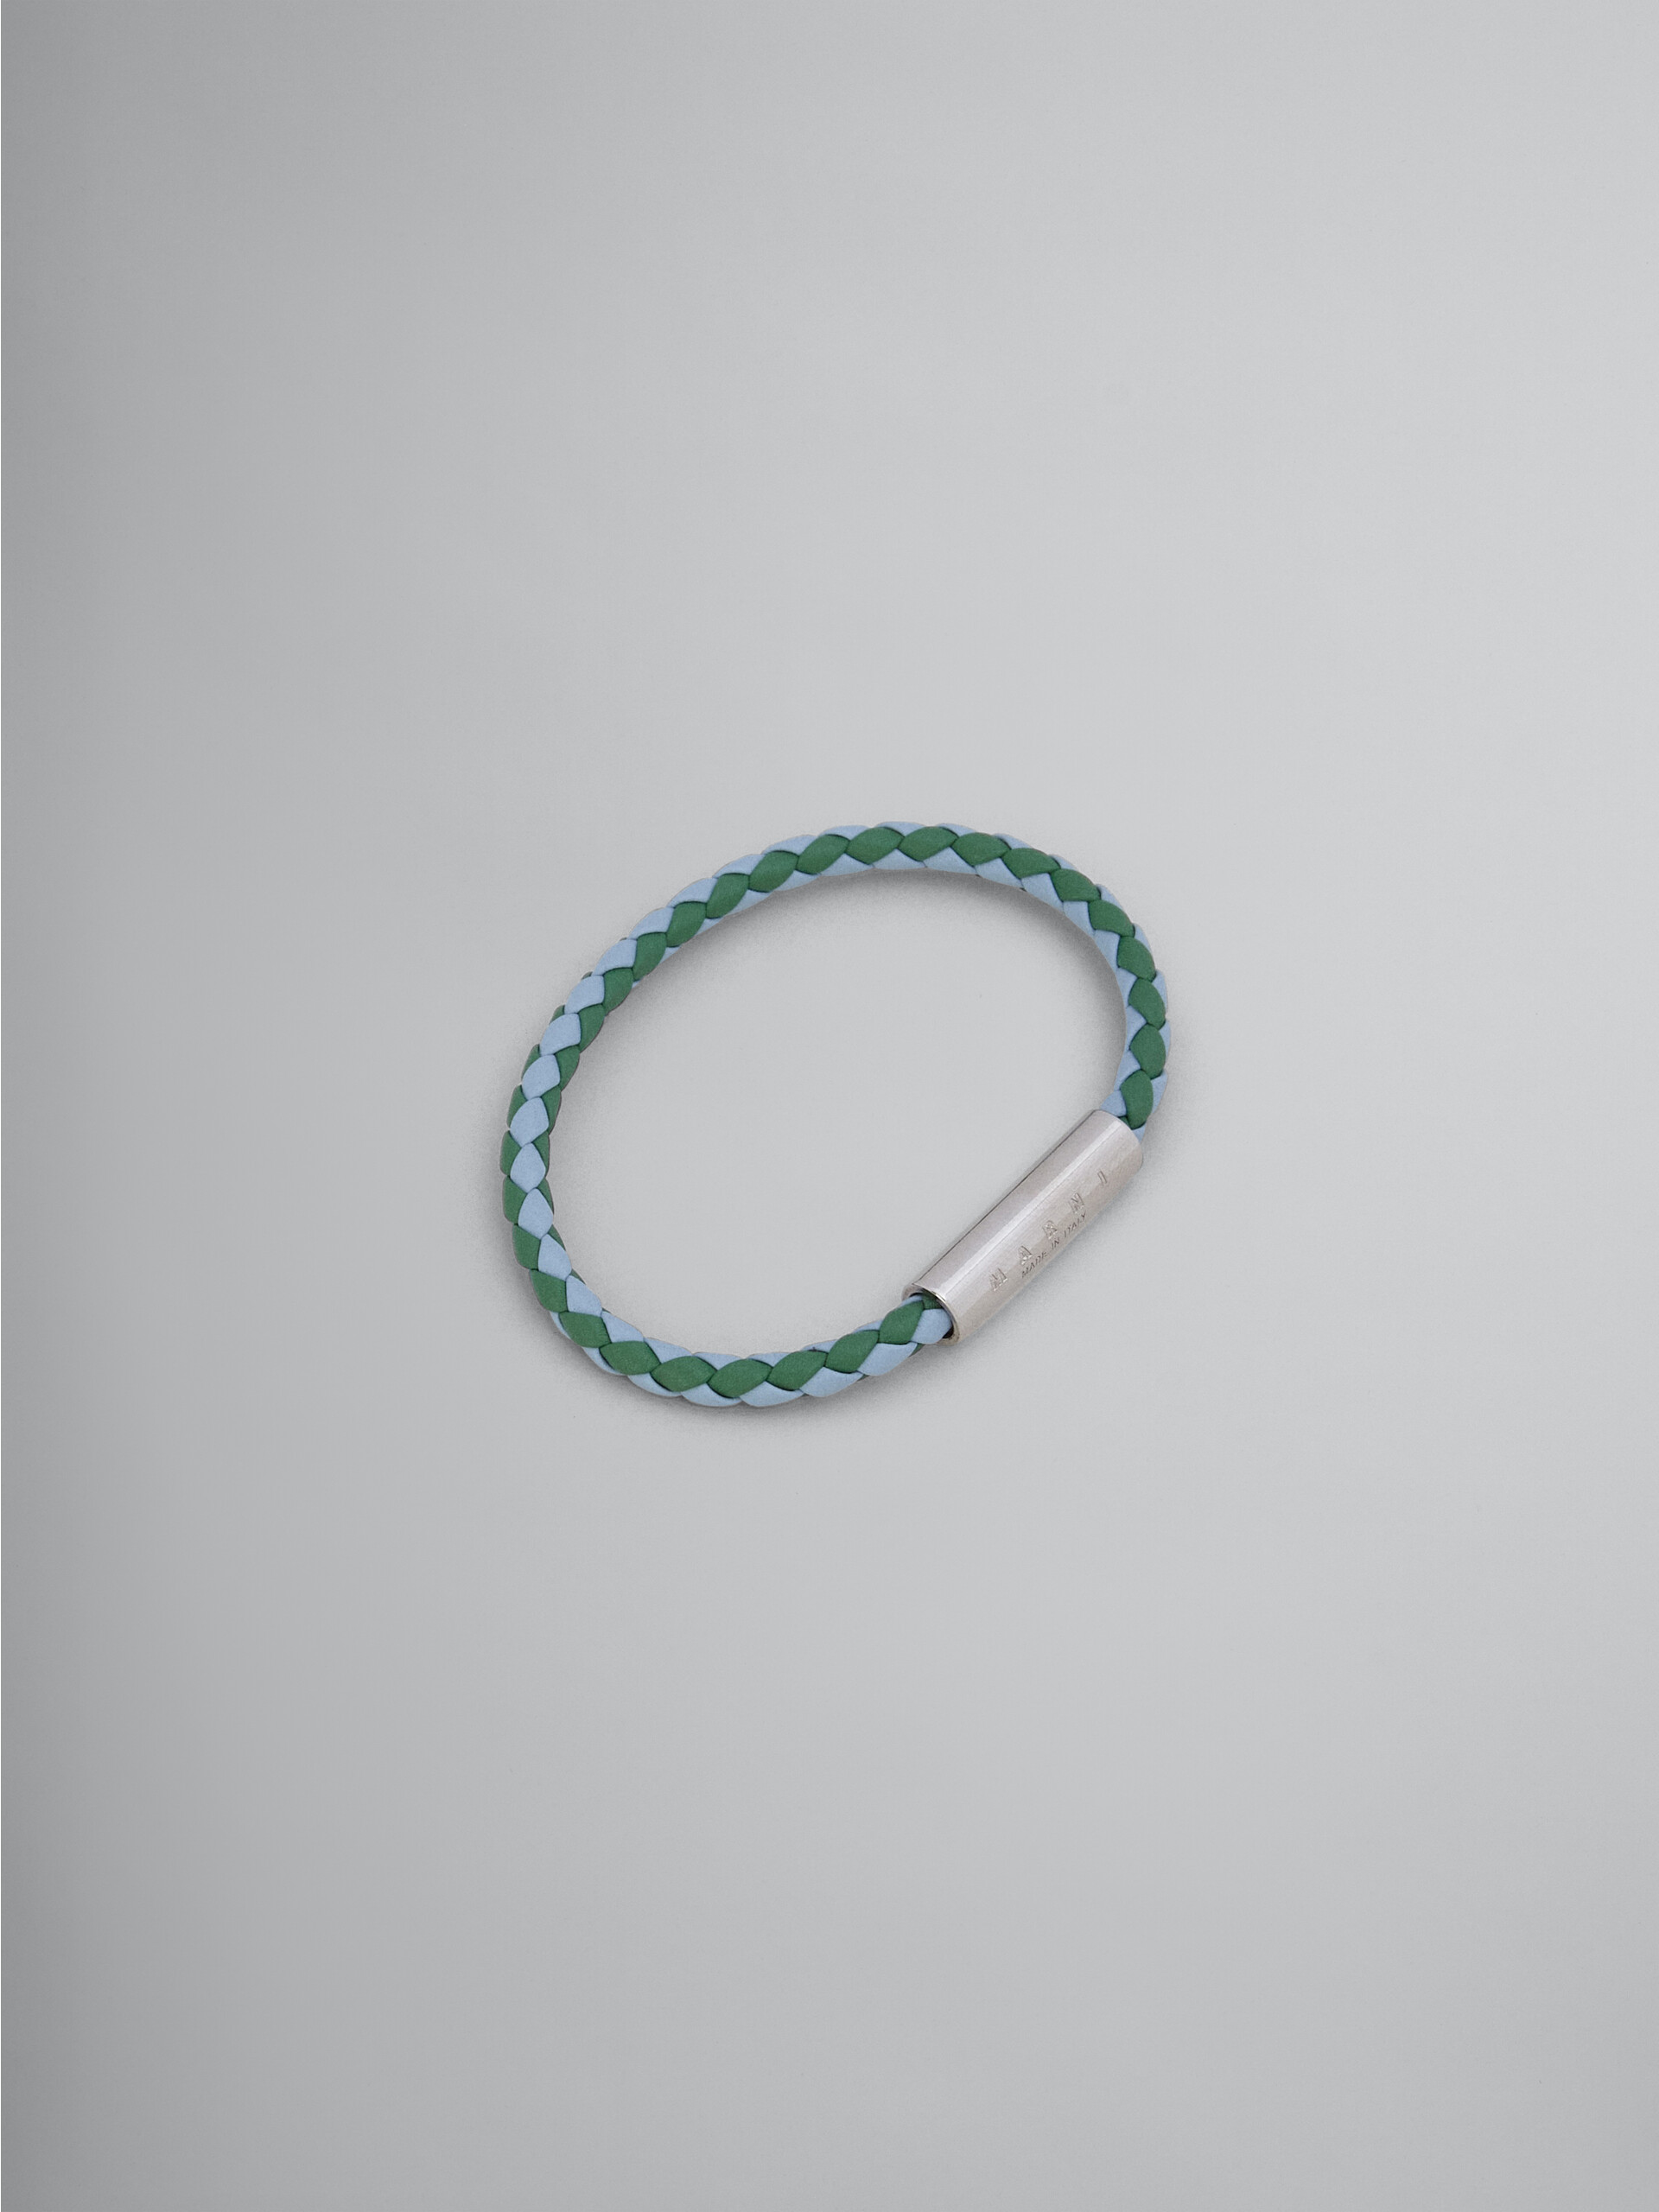 그린 & 라이트 블루 브레이디드 가죽 브레이슬릿 - Bracelets - Image 1